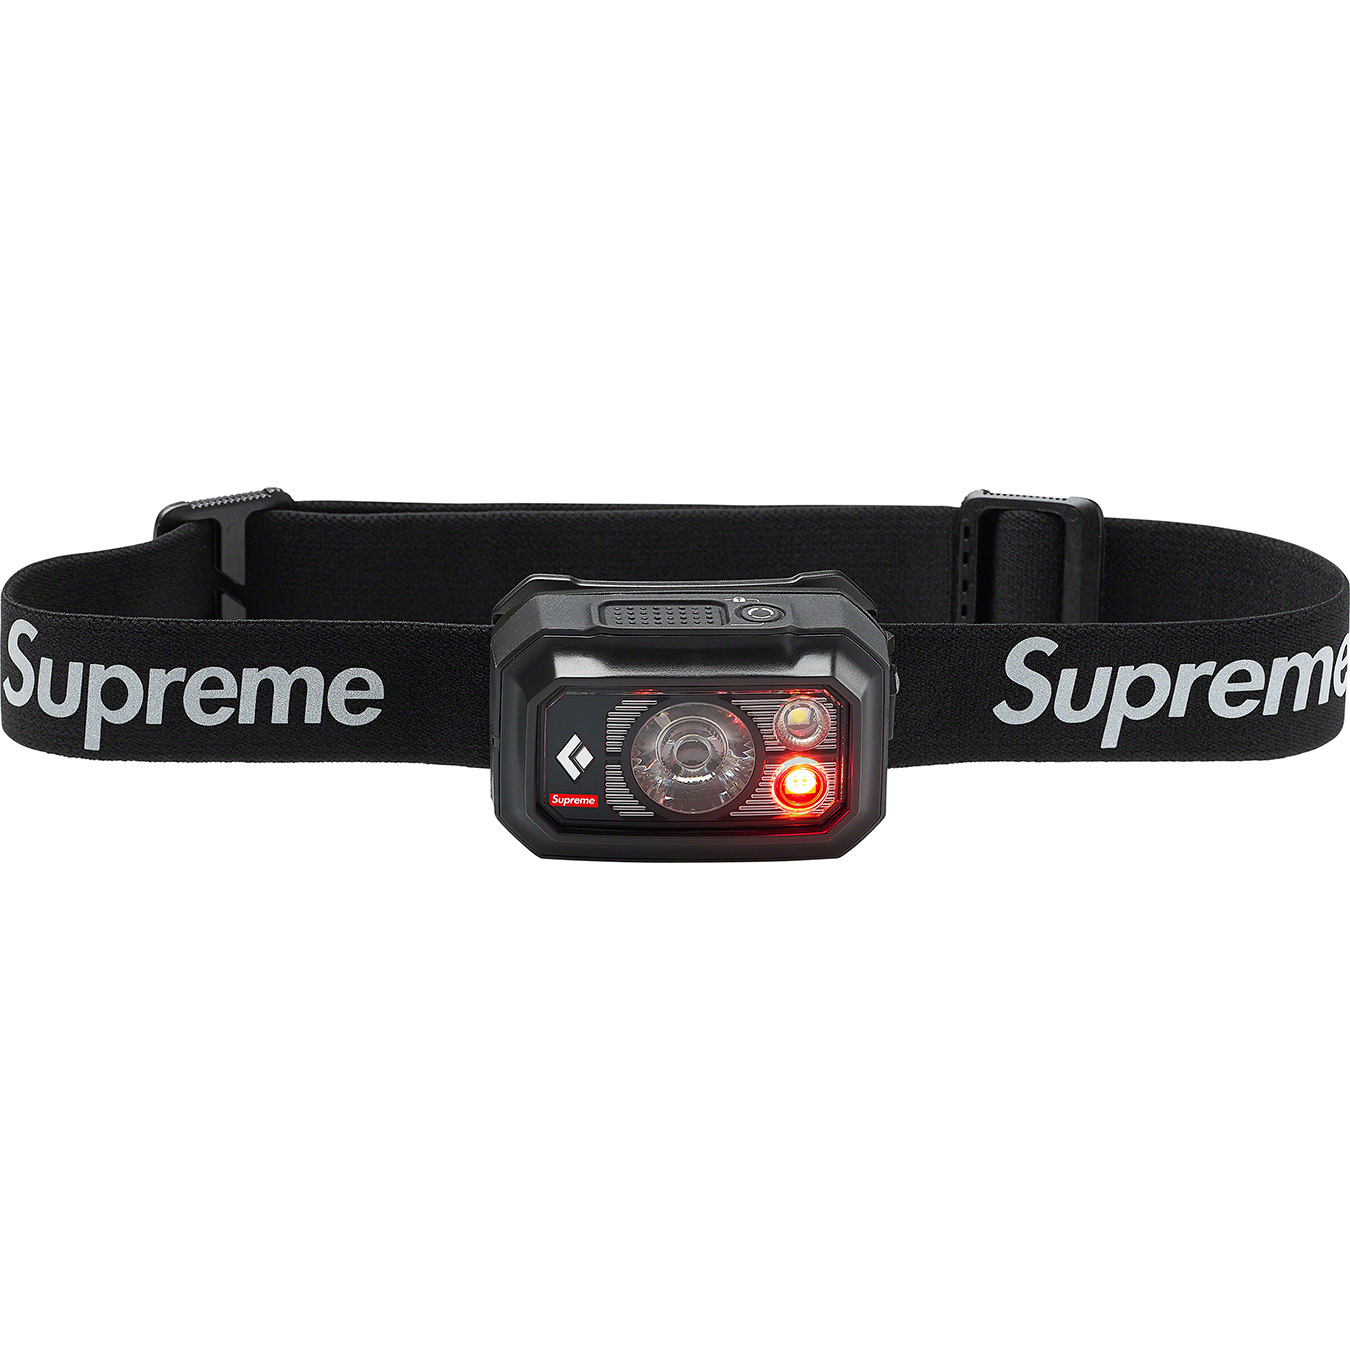 Supreme®/Black Diamond Storm 400 Headlamp